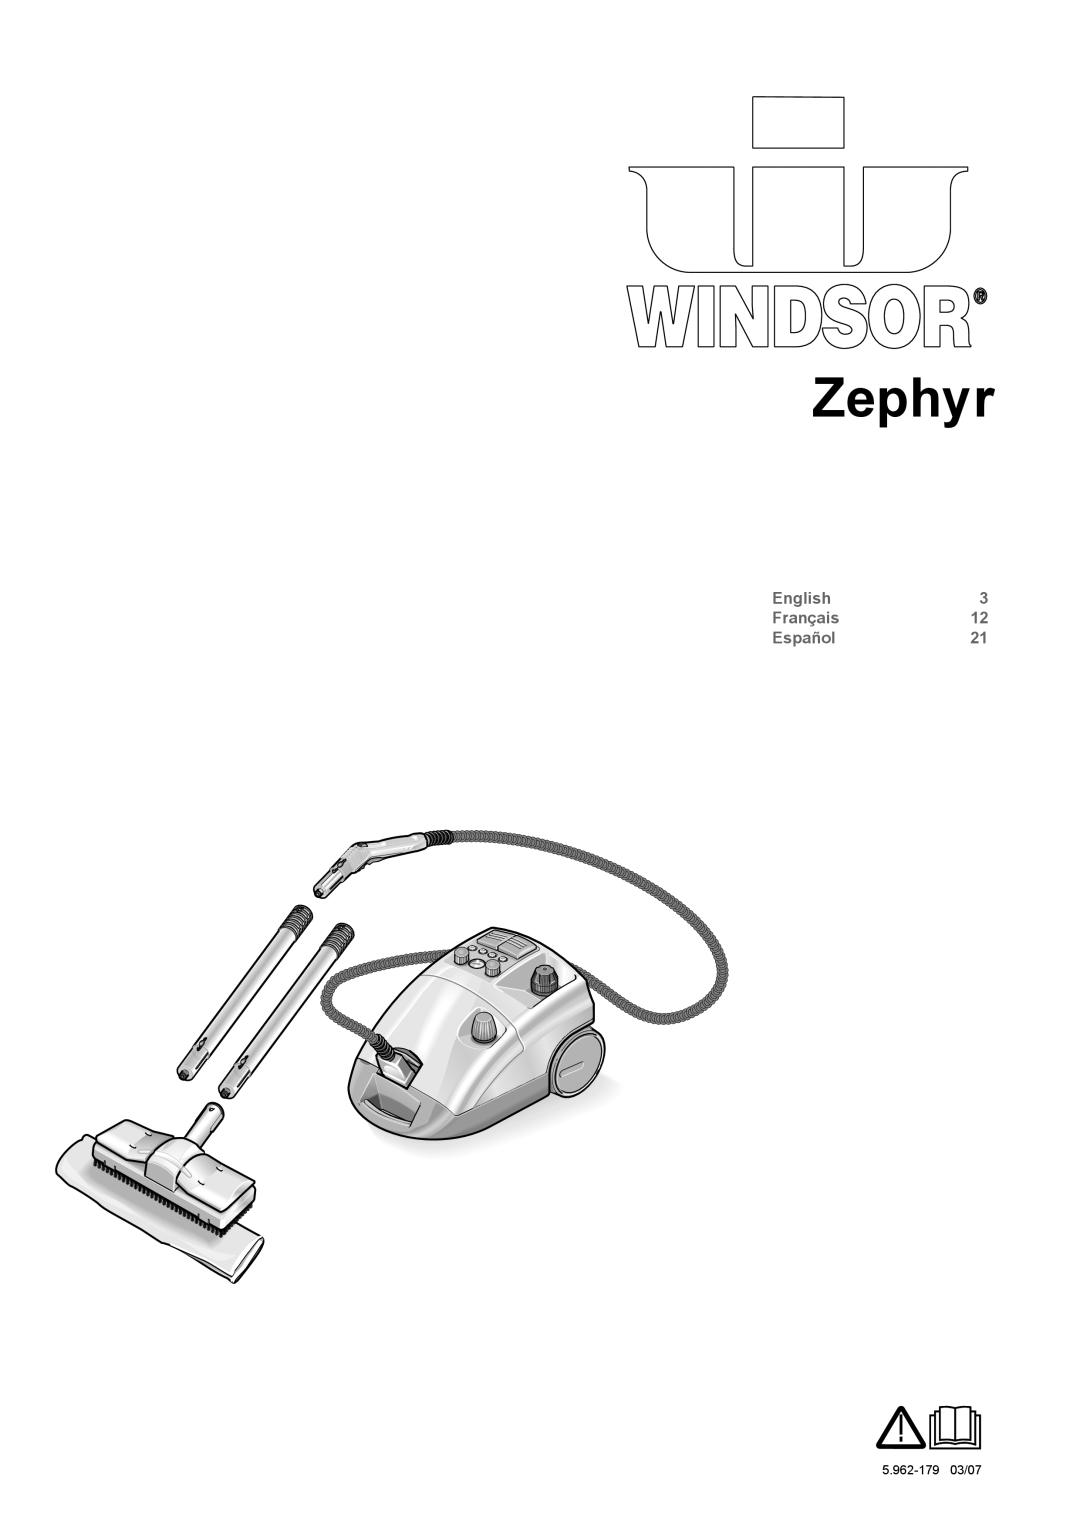 Windsor Zephyr manual English, Français, Español, 5.962-17903/07 